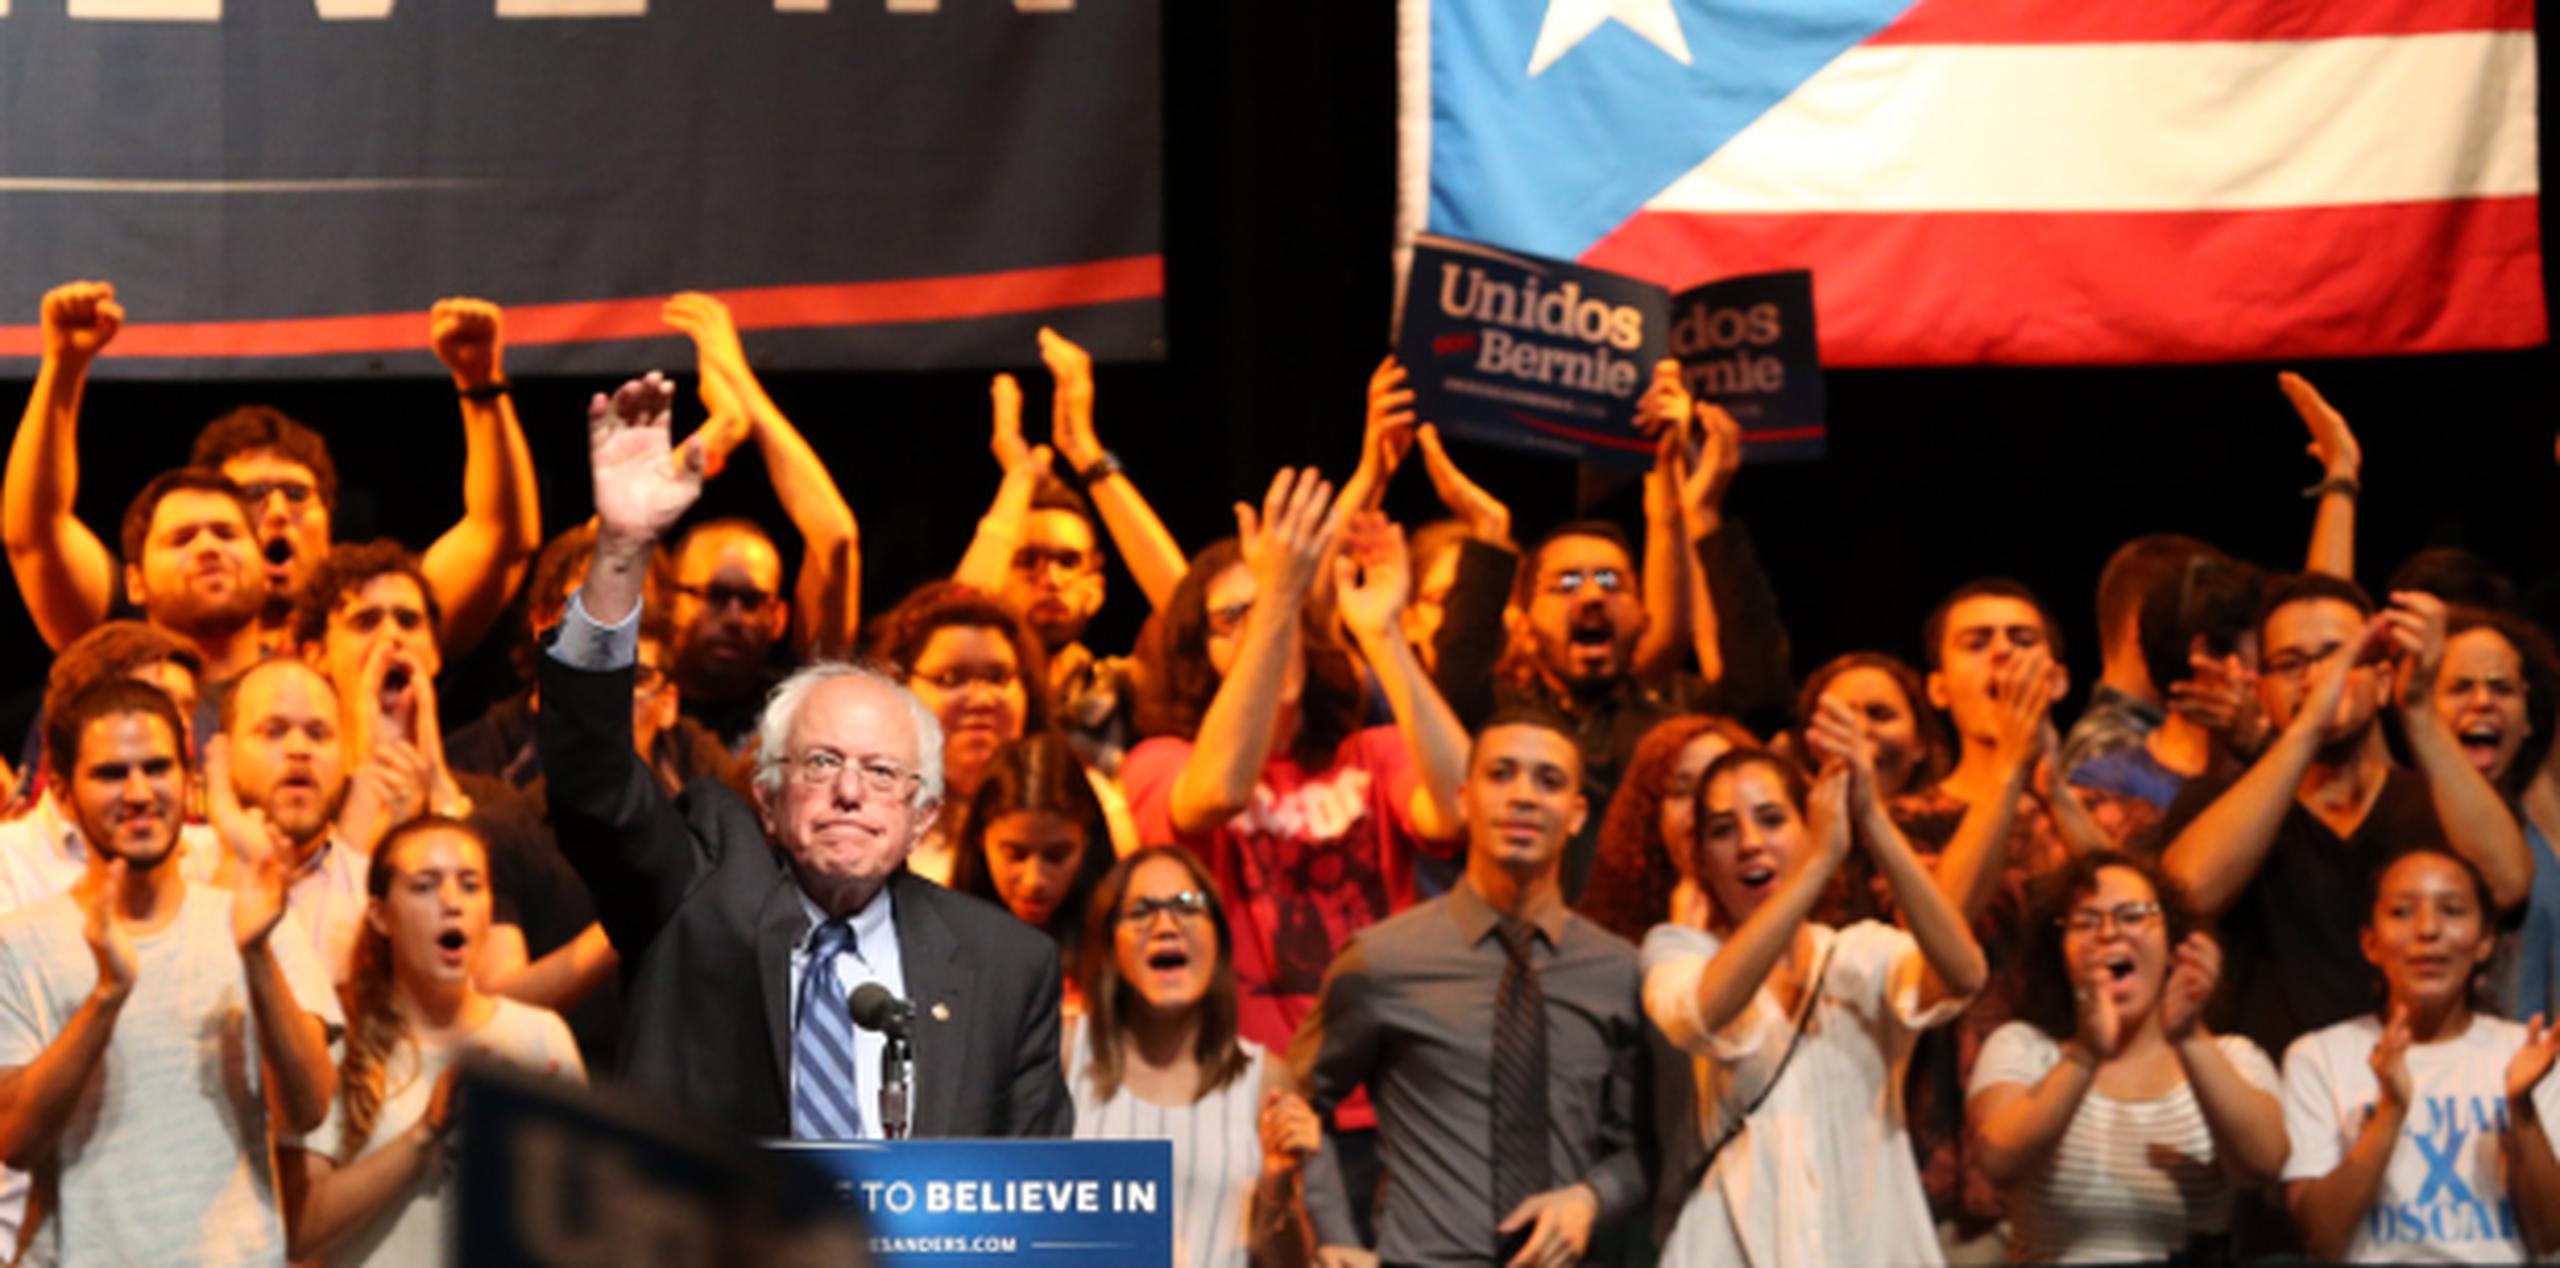 Bernie Sanders llenó a capacidad el Teatro de la Universidad de Puerto Rico, Recinto de Río Piedras. (juan.martinez@gfrmedia.com)